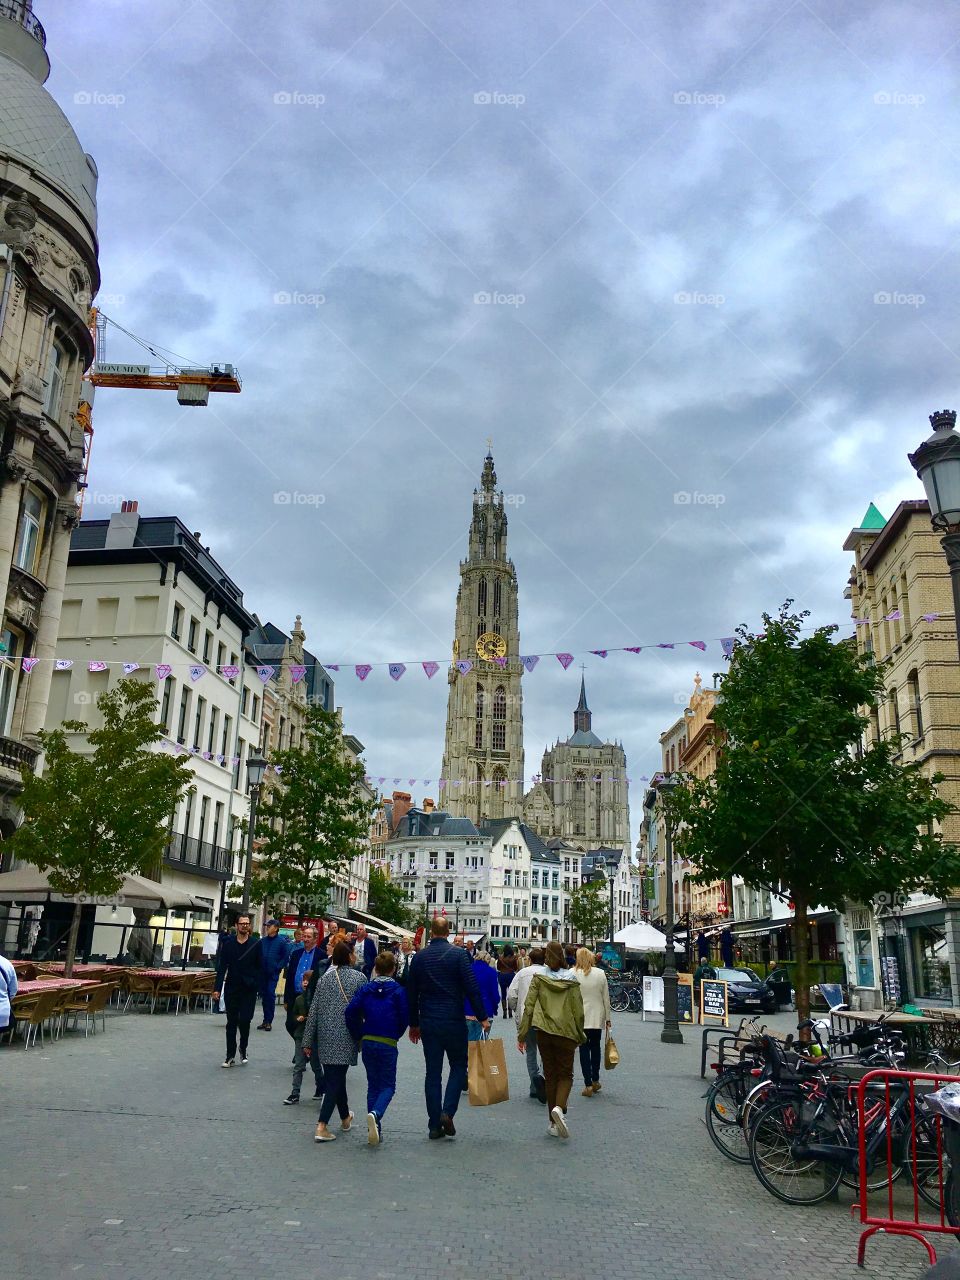 Festival in Antwerp